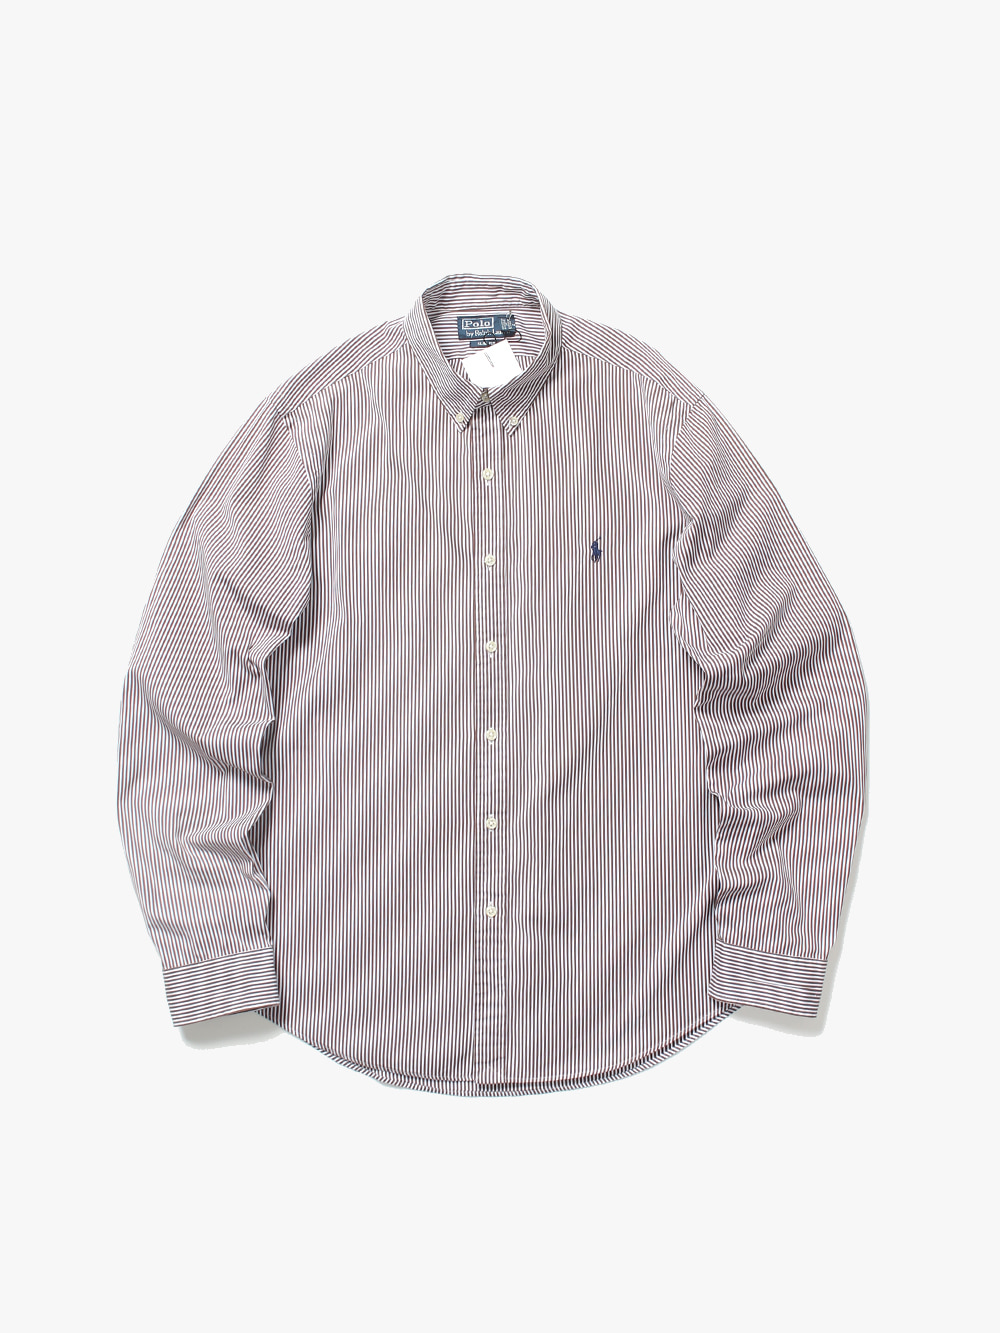 [ L ] Polo Ralph Lauren Shirt (6104)